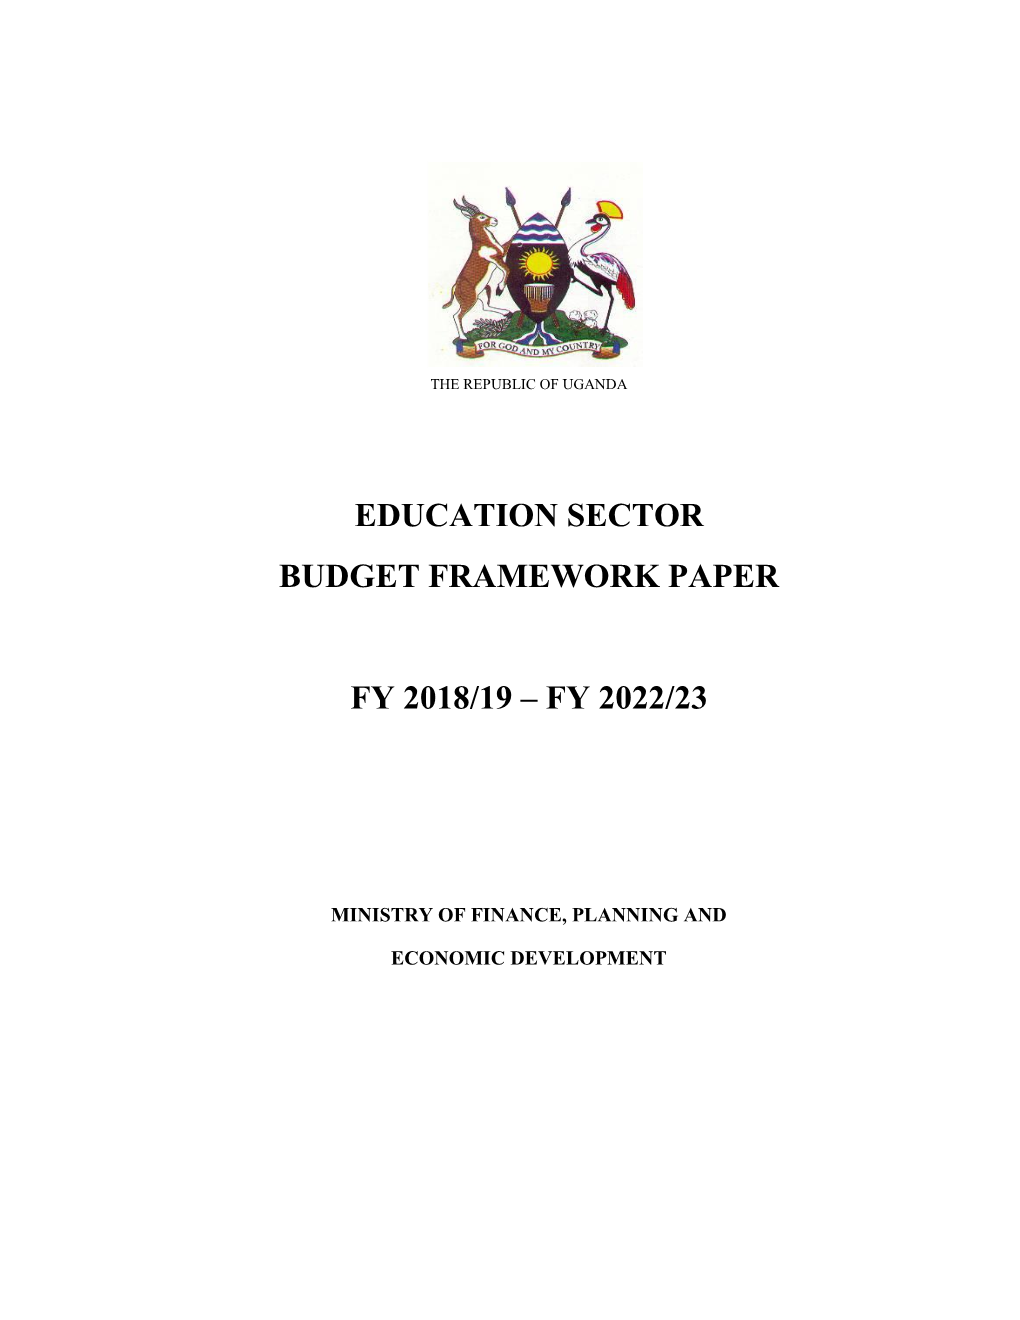 Education Sector Budget Framework Paper Fy 2018/19